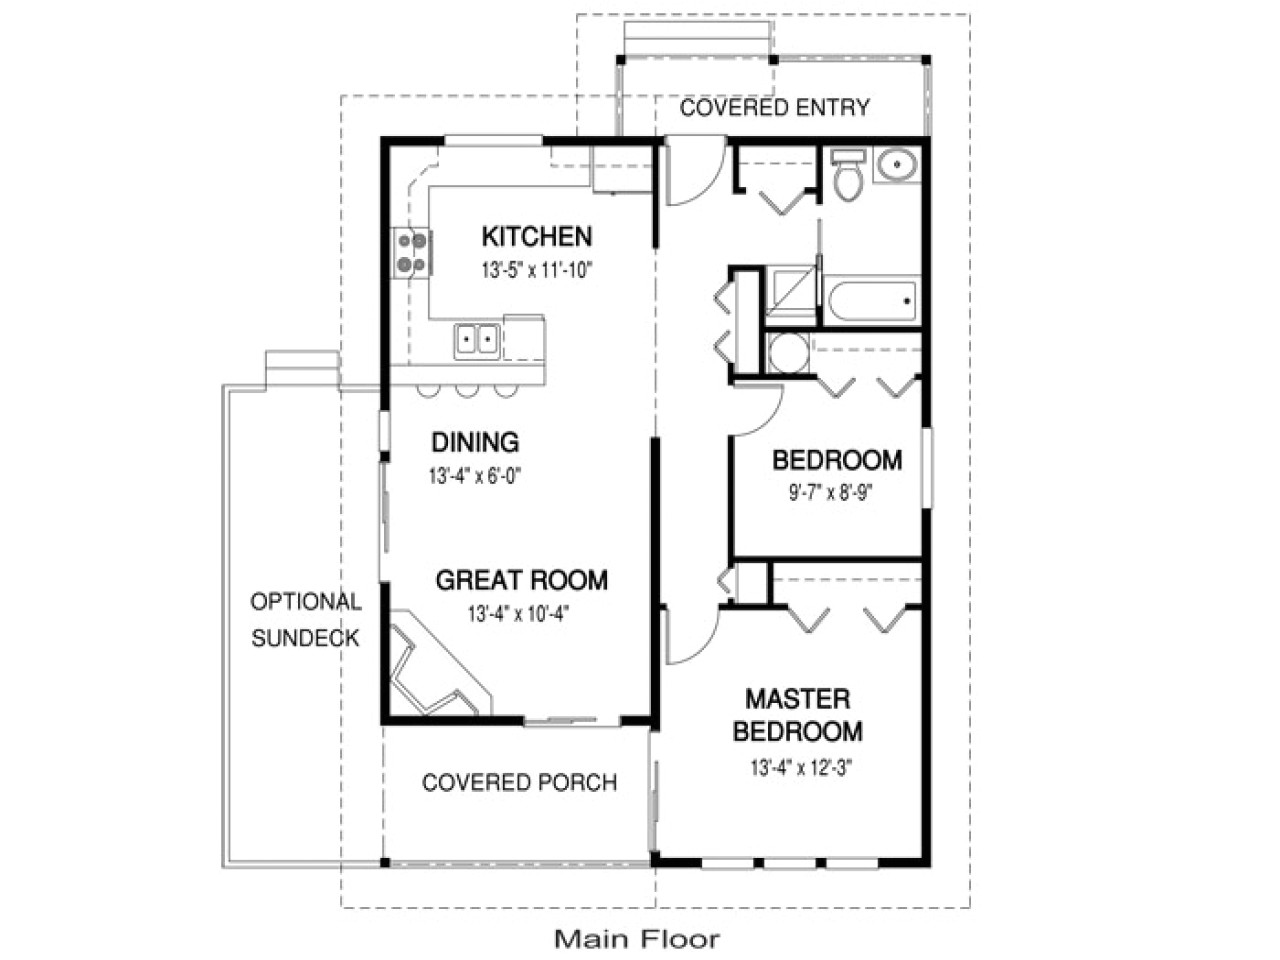 b9909d0a41ab44ab guest house plans under 1000 sq ft guest house plans under 1000 sq ft